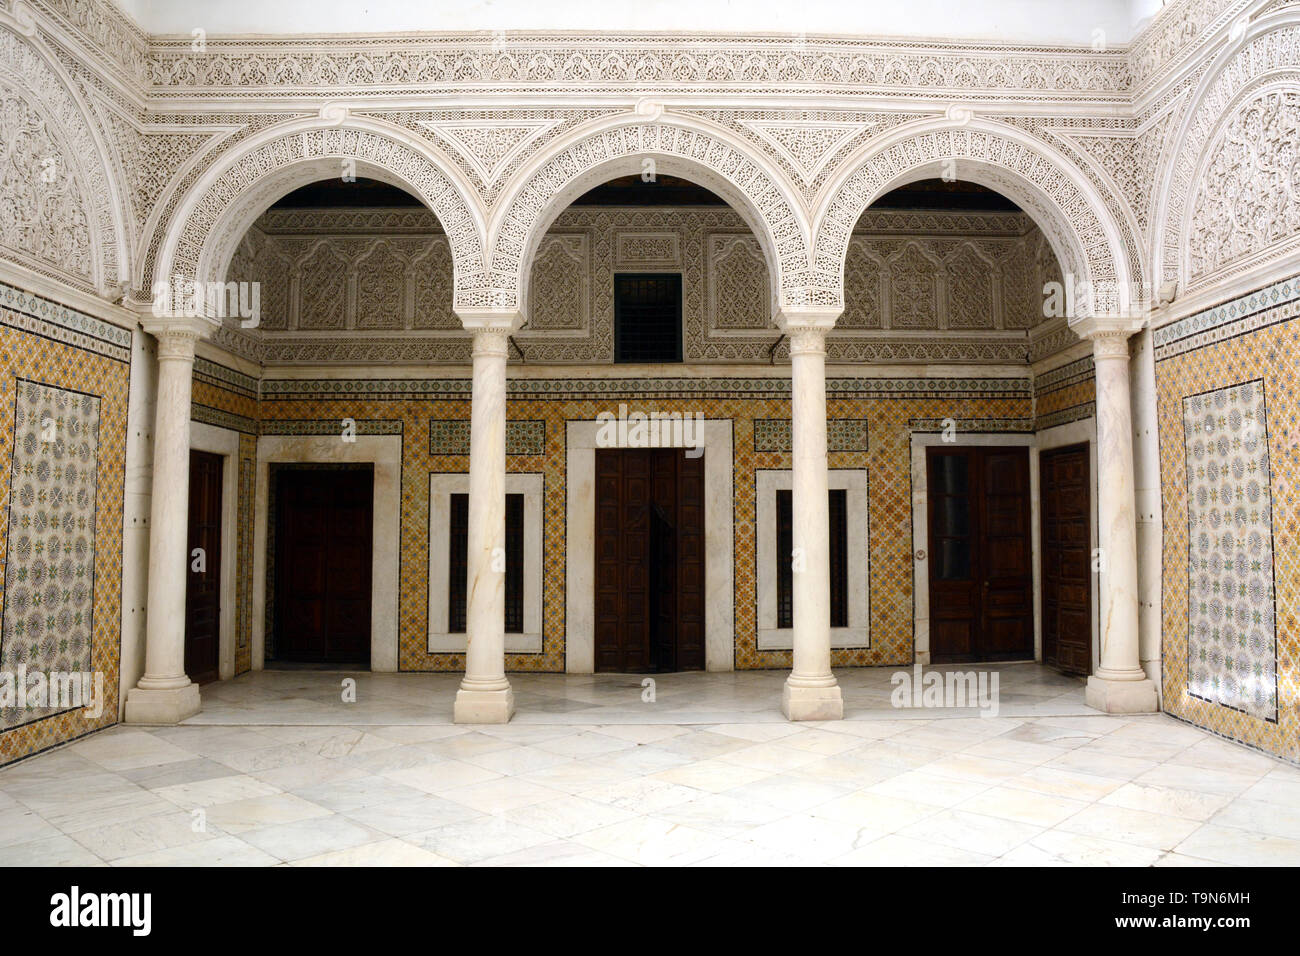 Islamic motivi architettonici lavori di piastrelle nel cortile centrale di un tradizionale del xvii secolo casa nella medina (città vecchia) di Tunisi, Tunisia. Foto Stock